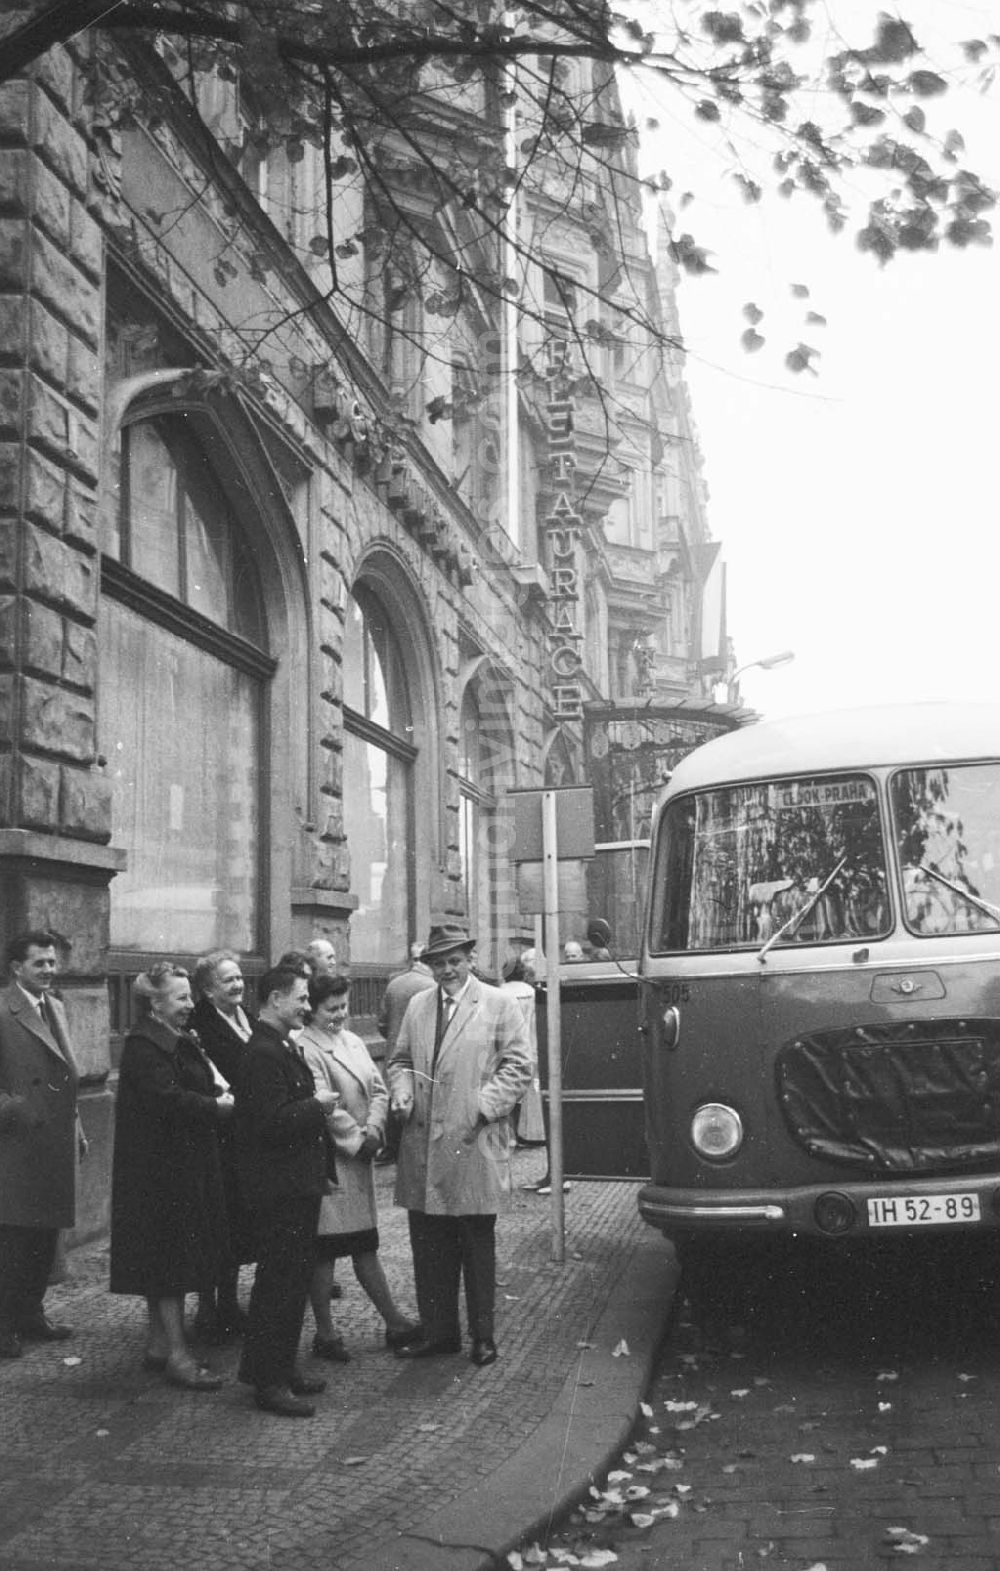 GDR picture archive: Prag - Touristengruppe steht auf Gehweg neben Bus Karosa 7